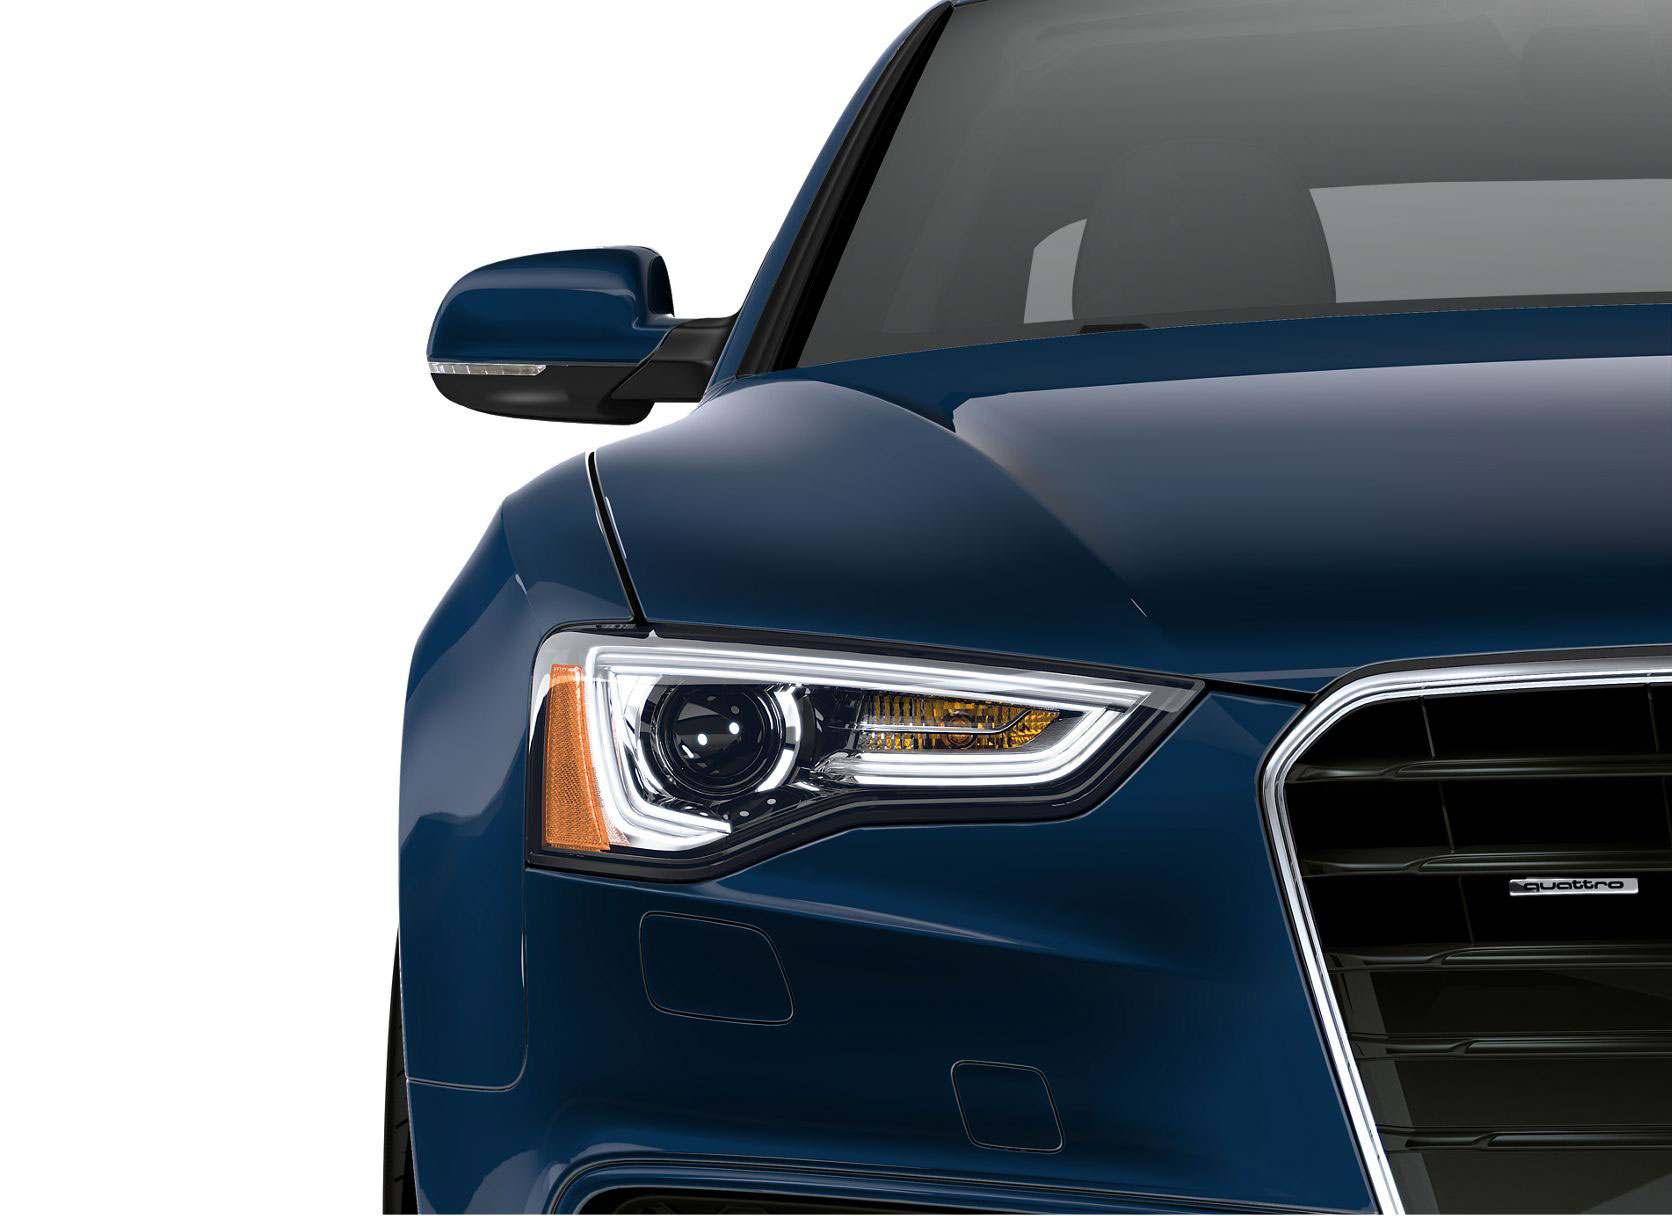 Audi A5 Premium Plus Coupe 2016 front view